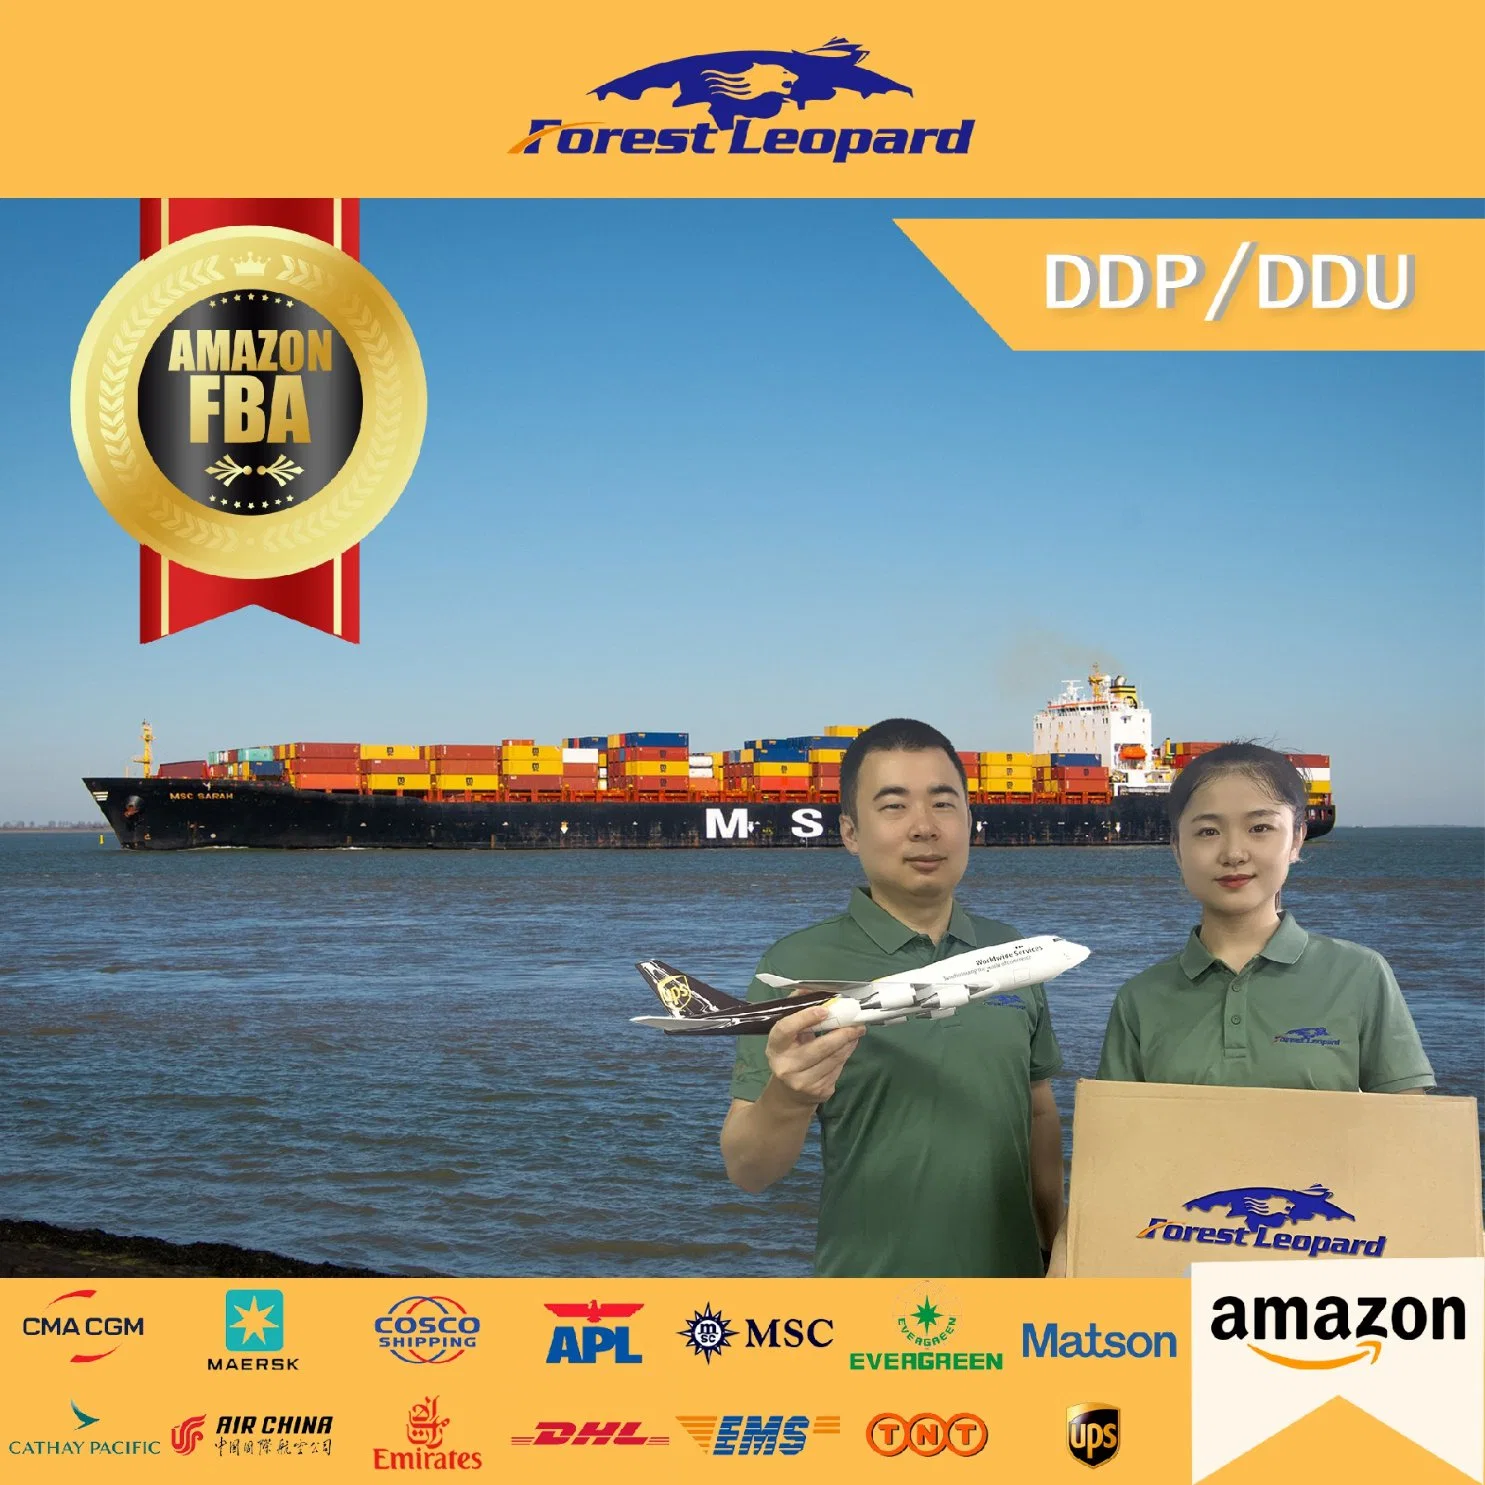 USA Lagertür zu Dor zu Versand durch Amazon Lagerhaus in ca. USA China nach USA Shenzhen Logistics Company DDP Fast Sea